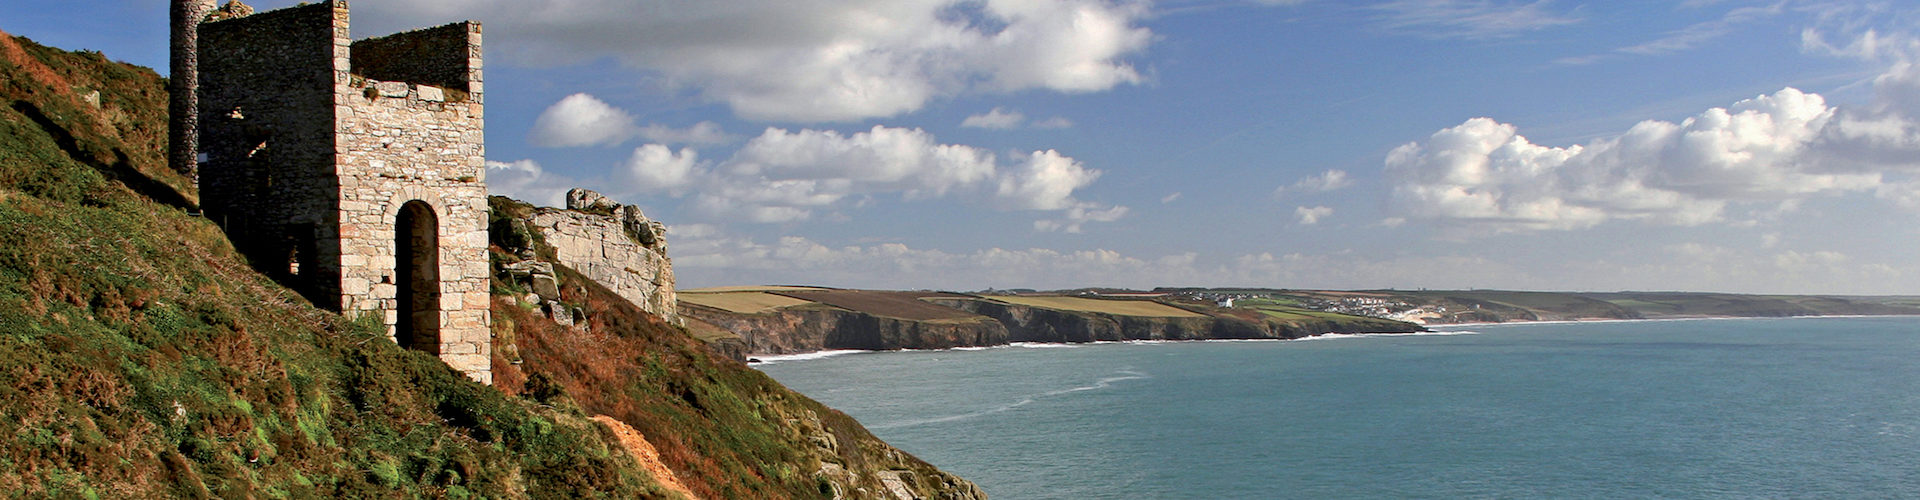 Tin mine on the coastline of Cornwall.